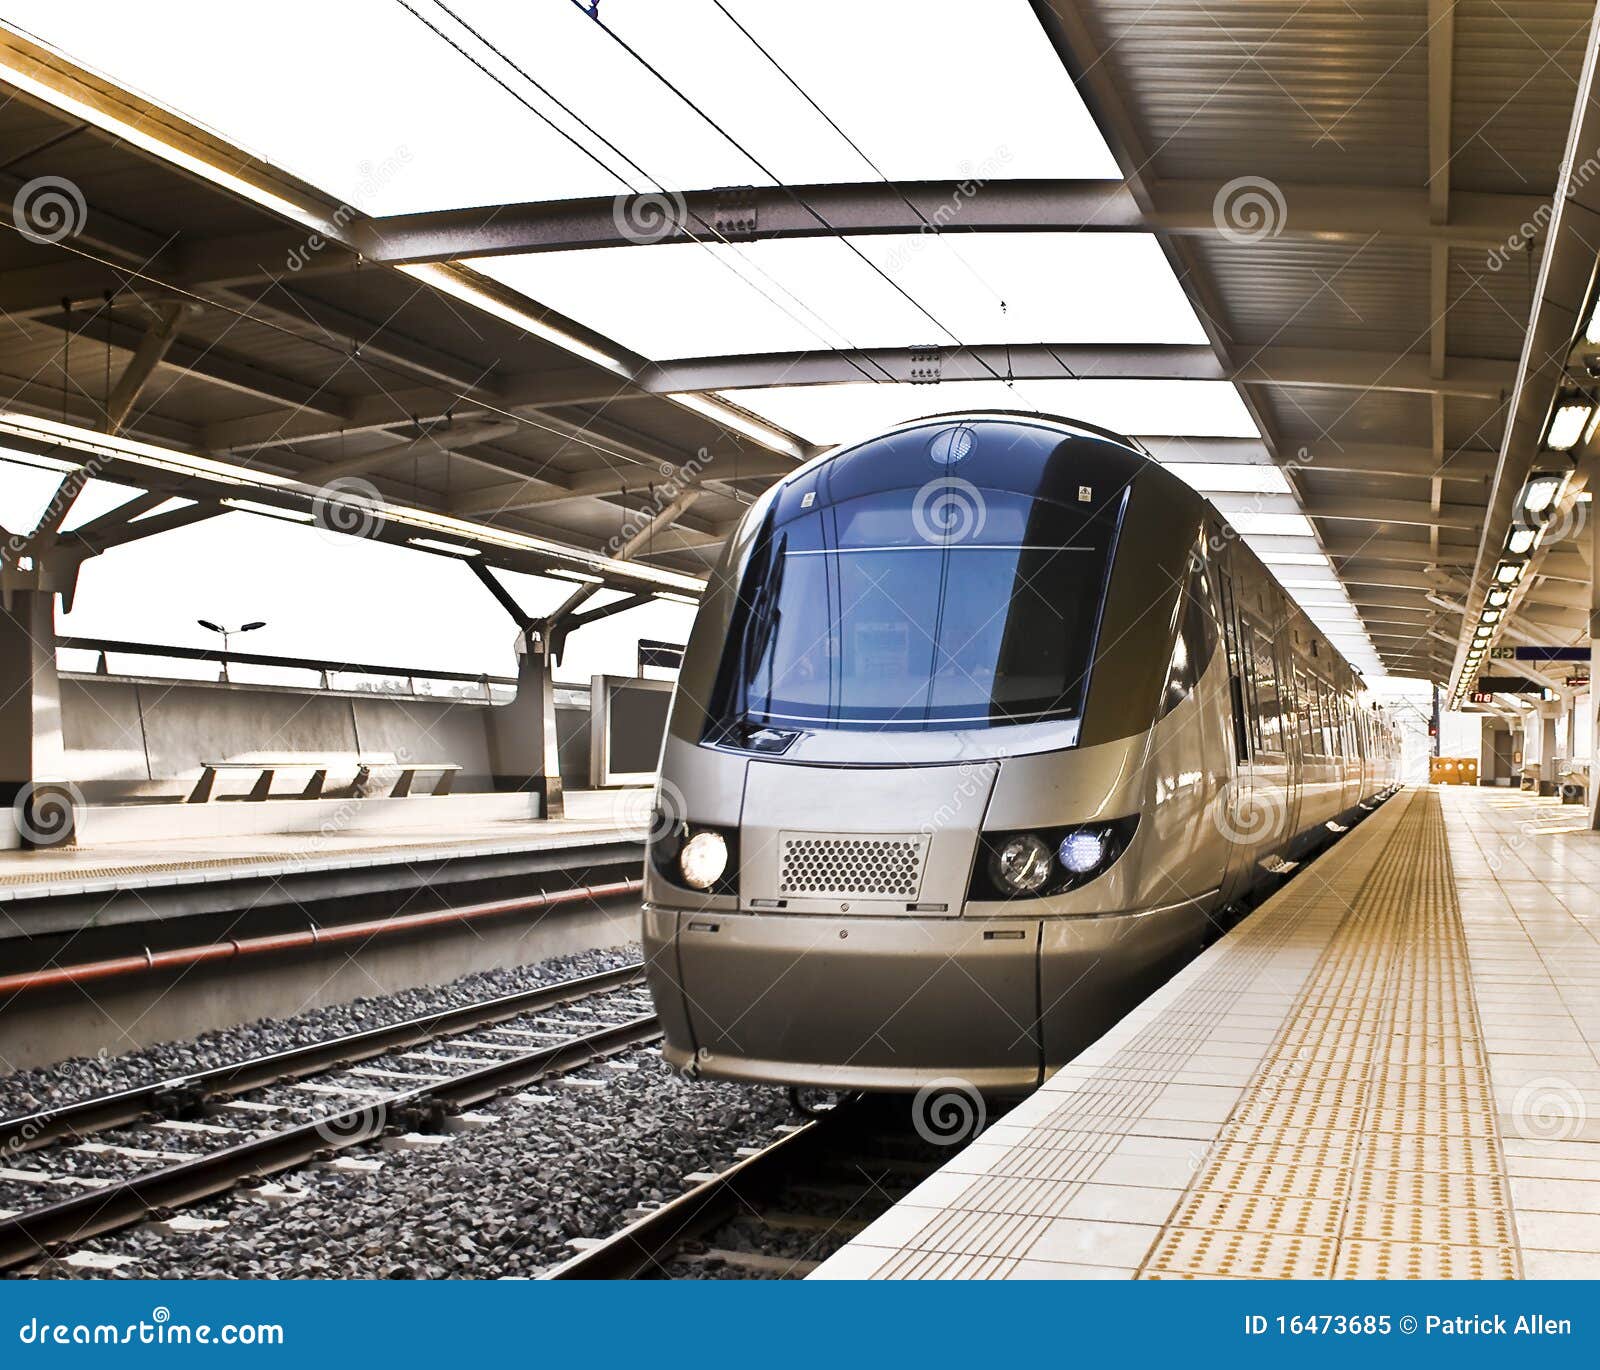 gautrain - high speed commuter train